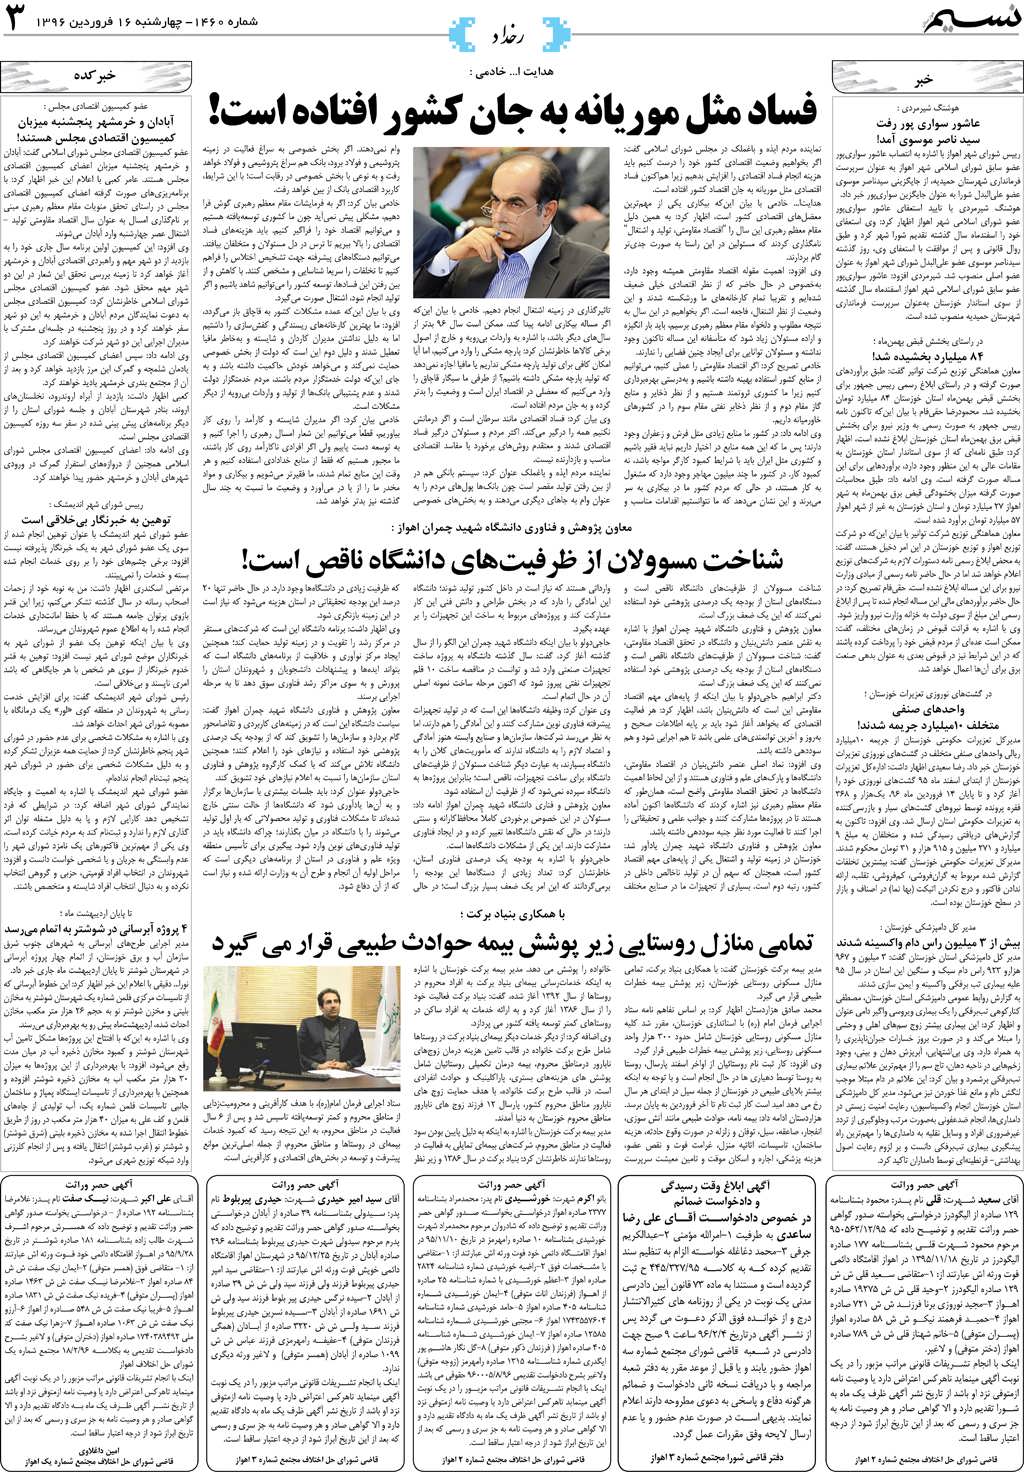 صفحه رخداد روزنامه نسیم شماره 1460